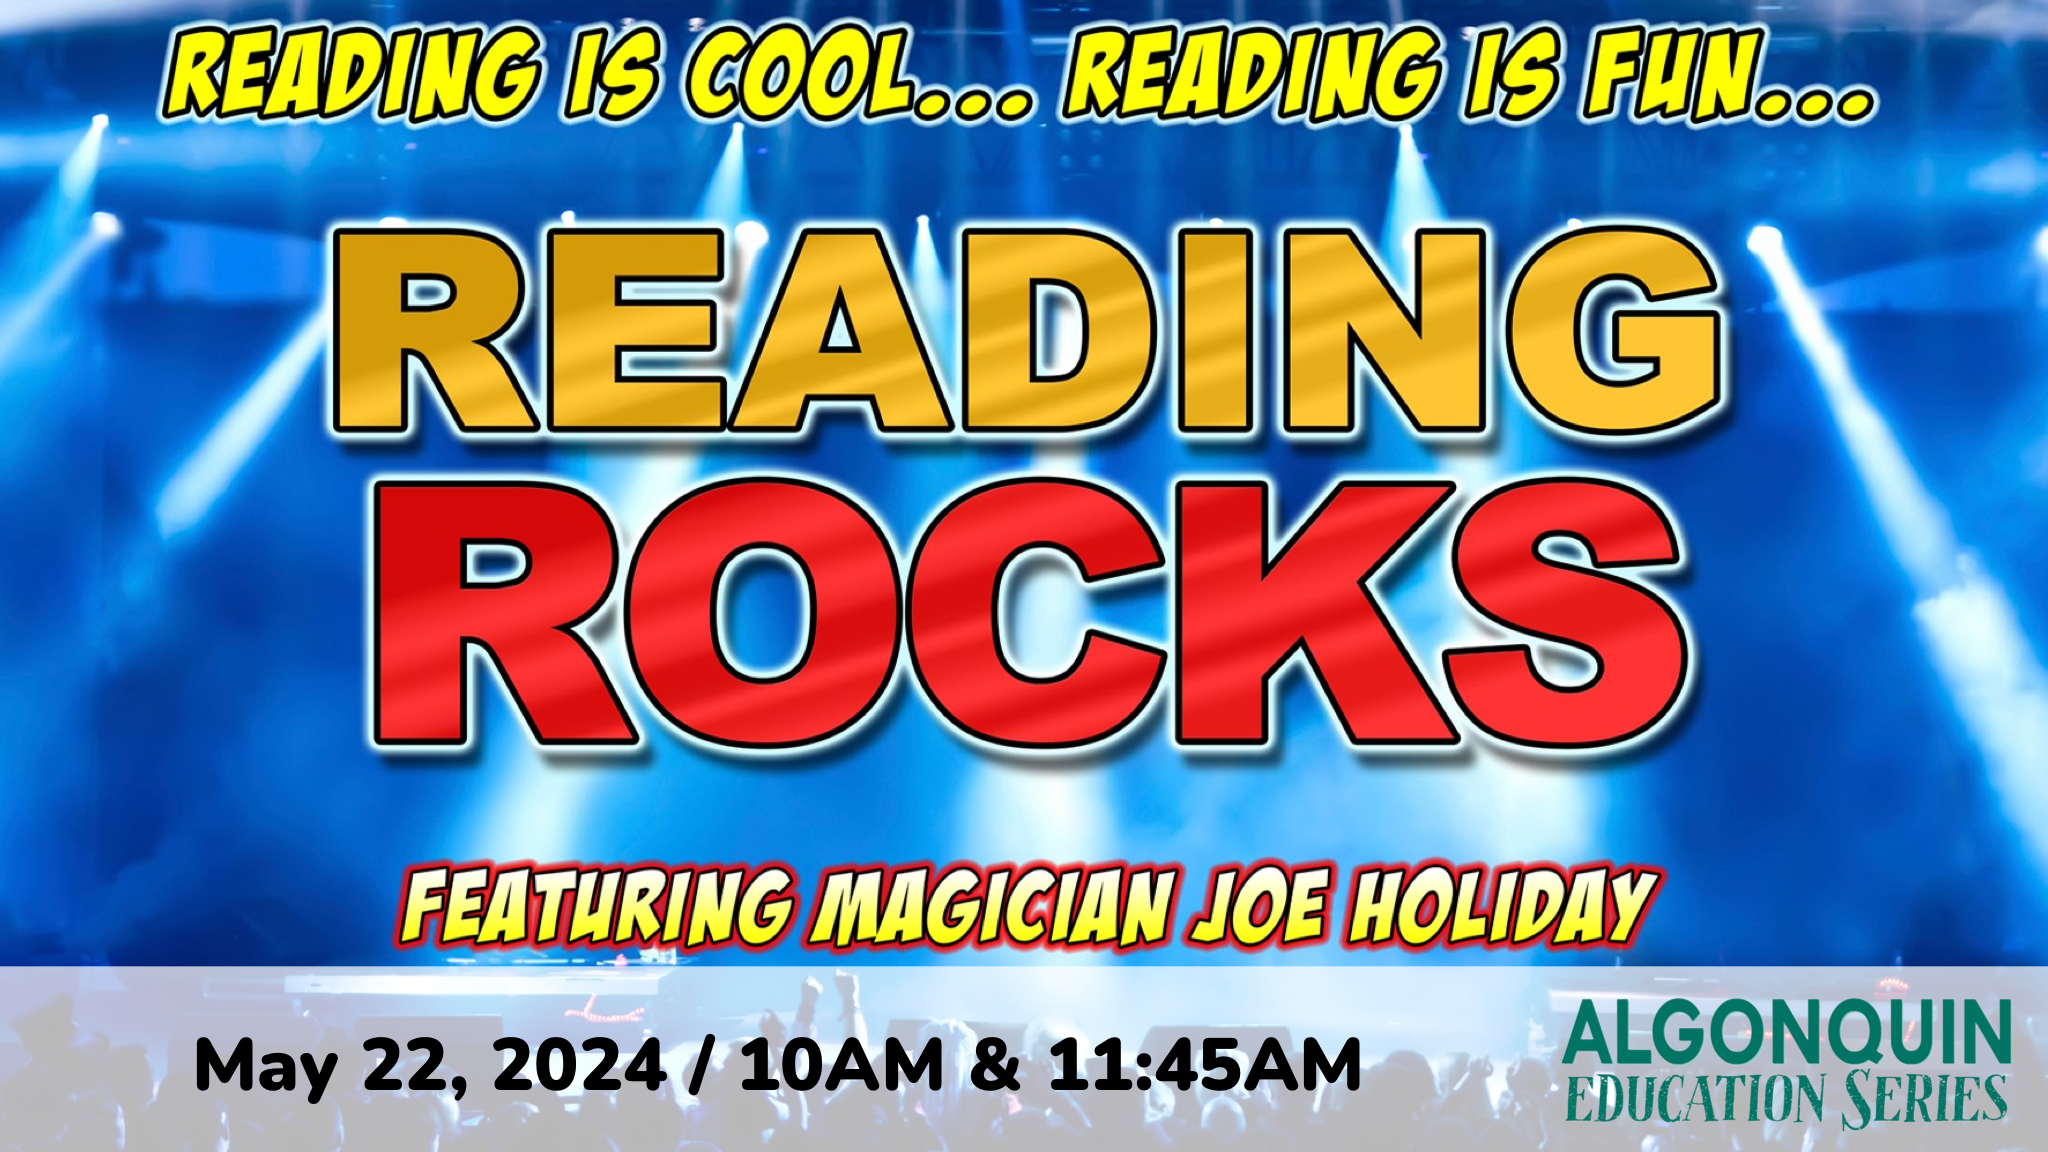 Joe Holiday's Reading Rocks Magic Show